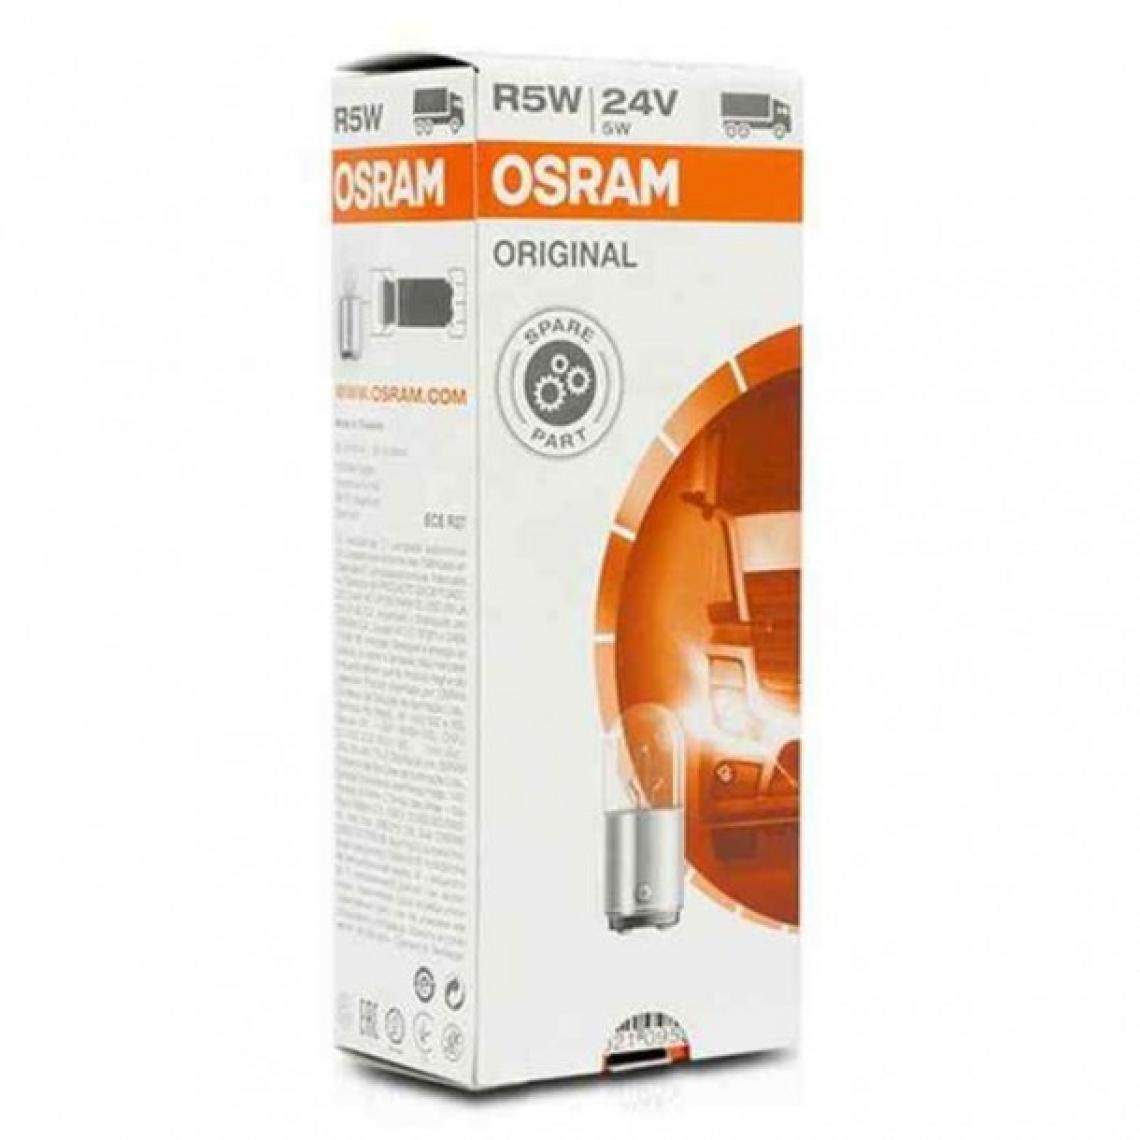 Osram - Ampoule pour voiture OS5626 Osram OS5626 R5W 5W 24v (10 pcs) - Lampe connectée